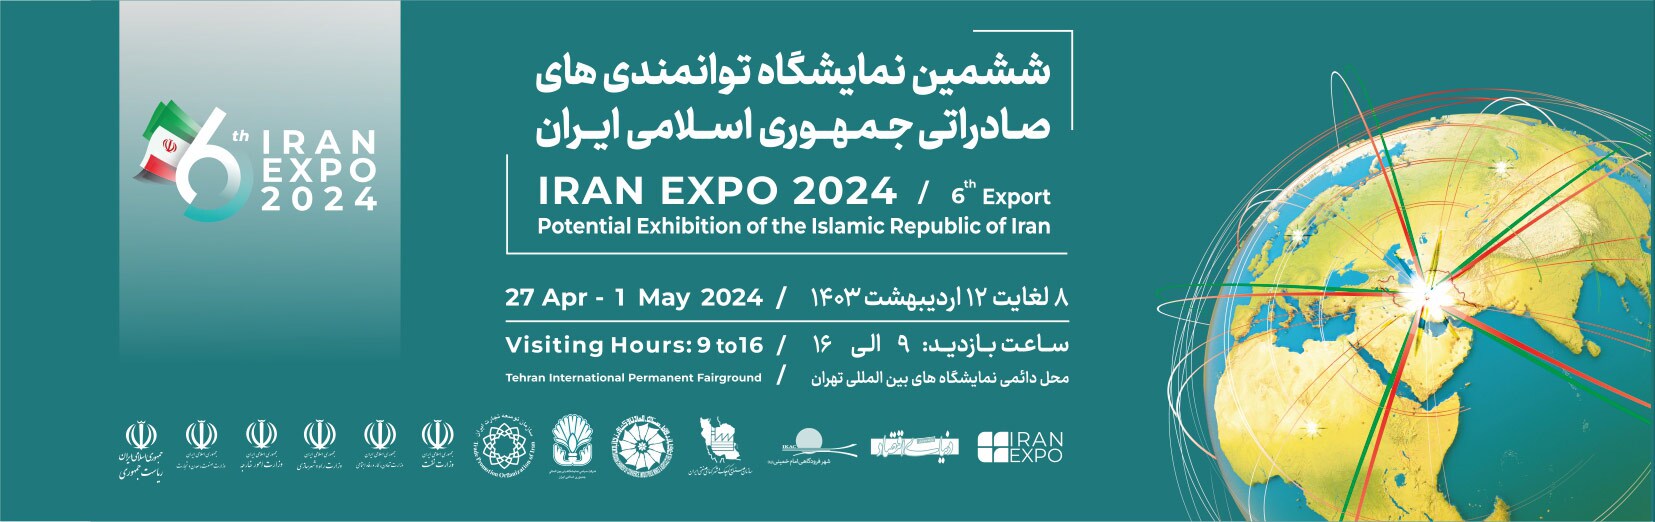 گزارش تصویری از ششمین نمایشگاه توانمندی های صادراتی جمهوری اسلامی ایران